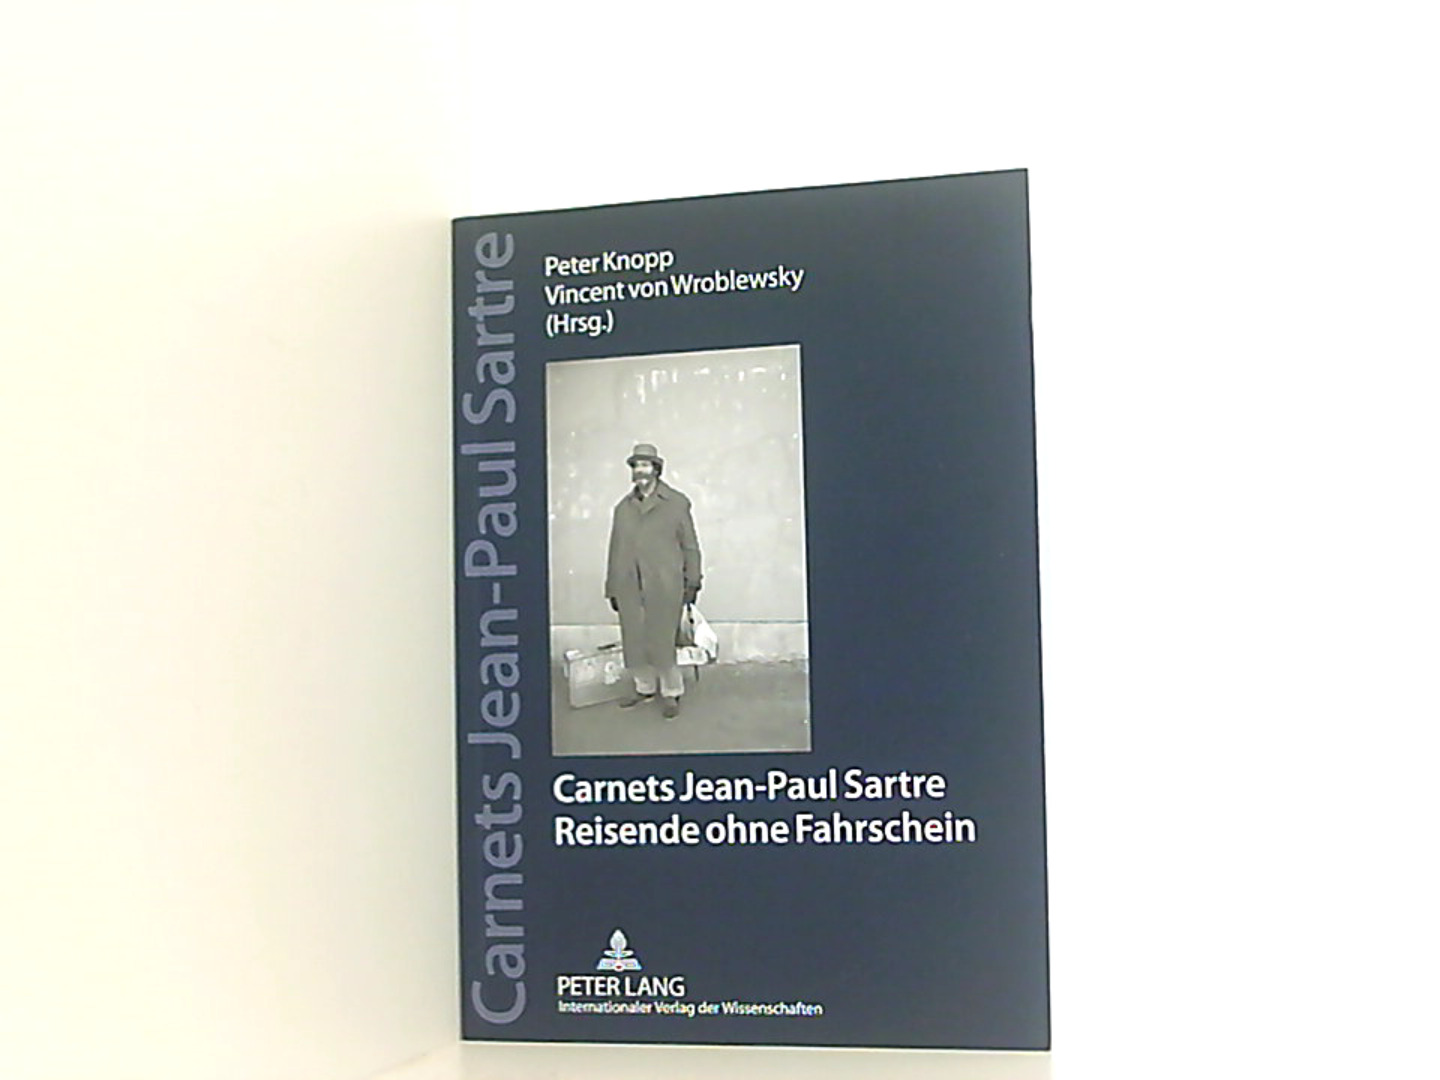 Carnets Jean Paul Sartre: Reisende ohne Fahrschein- Jahrbücher der Sartre-Gesellschaft e. V. (2012) - Knopp, Peter und Vincent von Wroblewsky